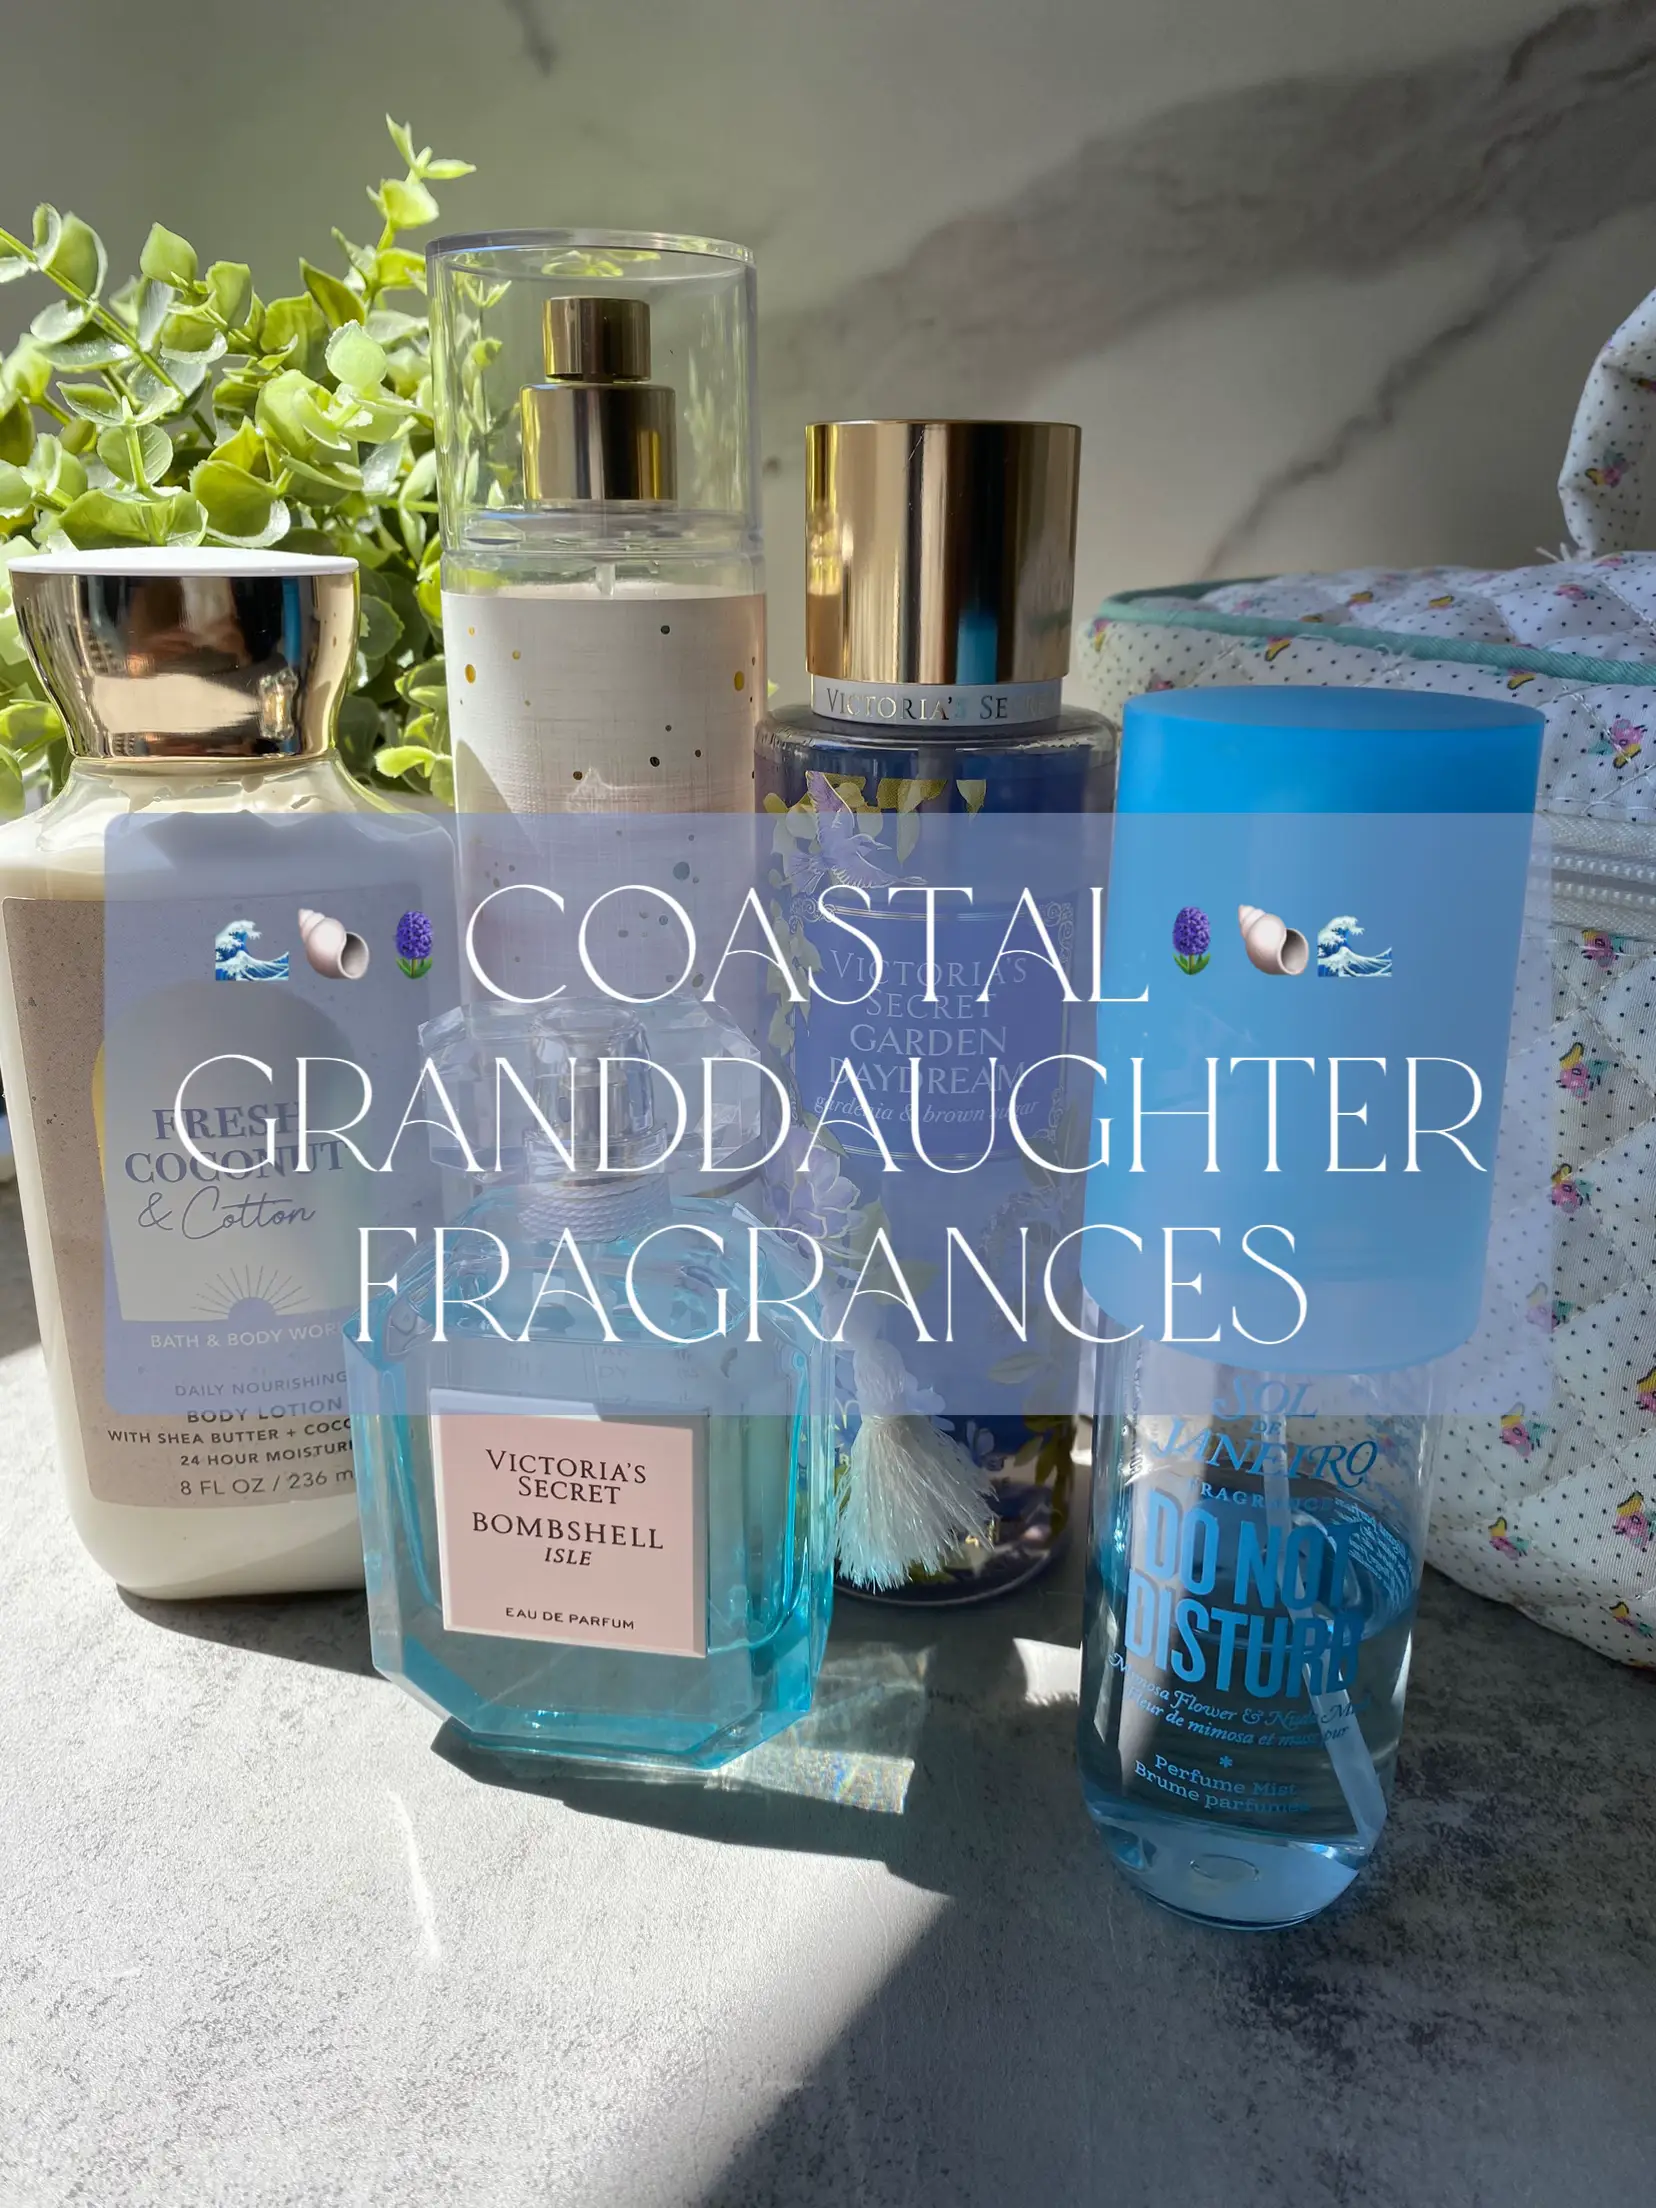 Coastal granddaughter fragrances 🌊🐚's images